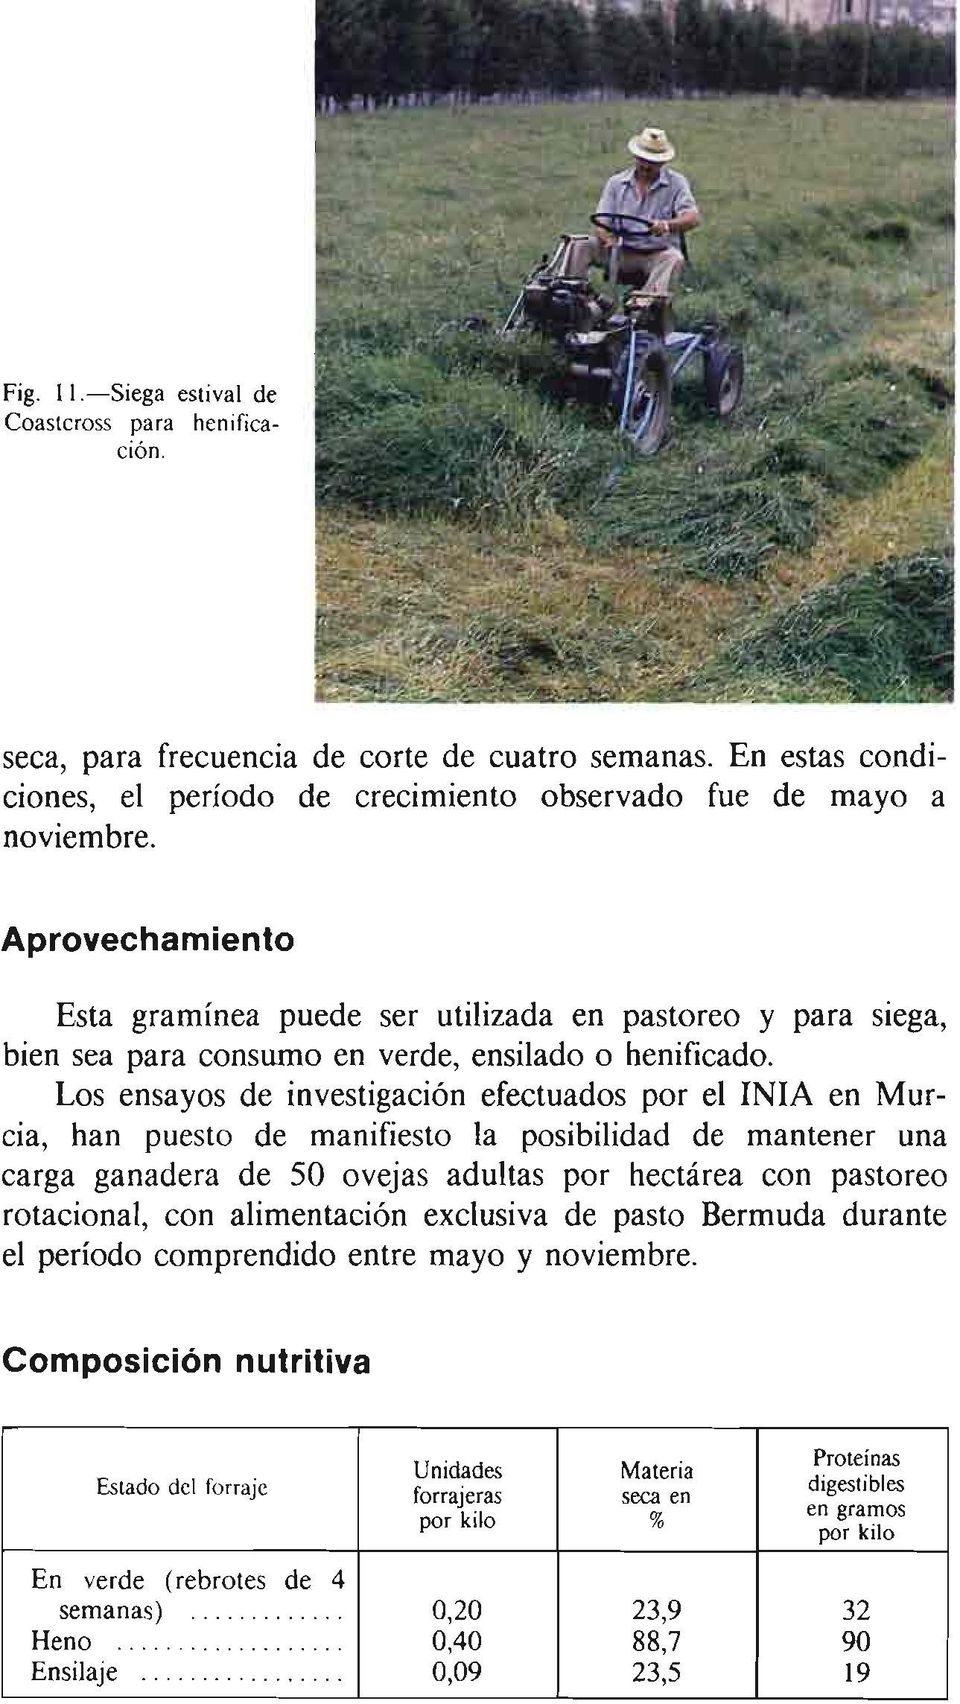 Los ensayos de investigación efectuados por el INIA en Murcia, han puesto de manifiesto la posibilidad de mantener una carga ganadera de 50 ovejas adultas por hectárea con pastoreo rotacional, con